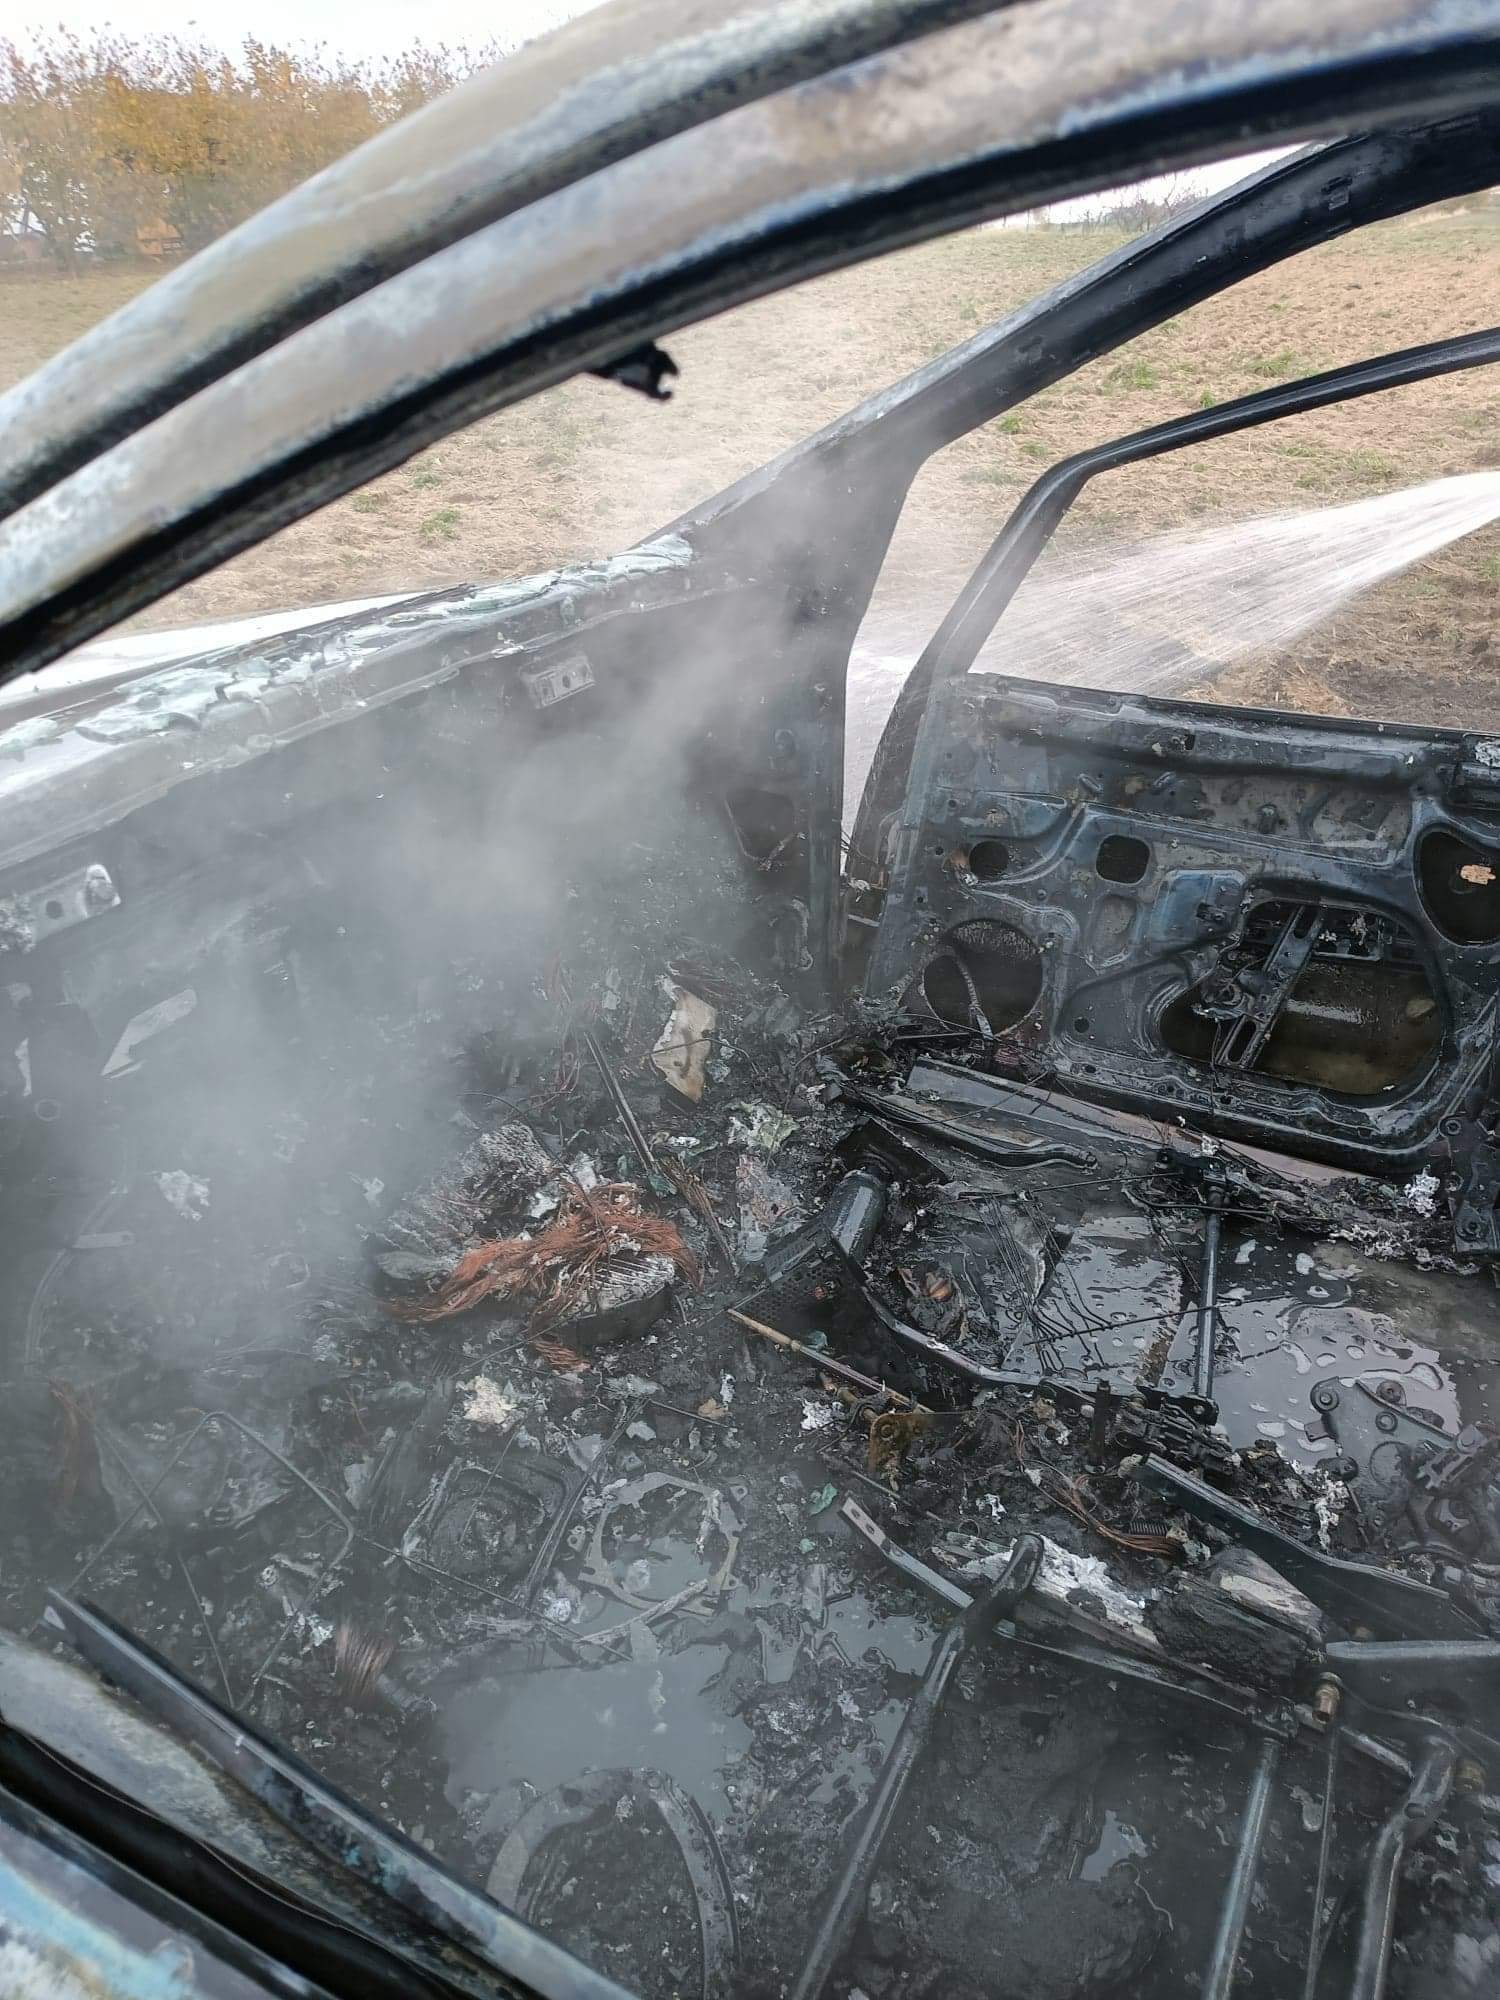 W trakcie jazdy mercedes stanął w płomieniach. Auto spłonęło doszczętnie (zdjęcia)